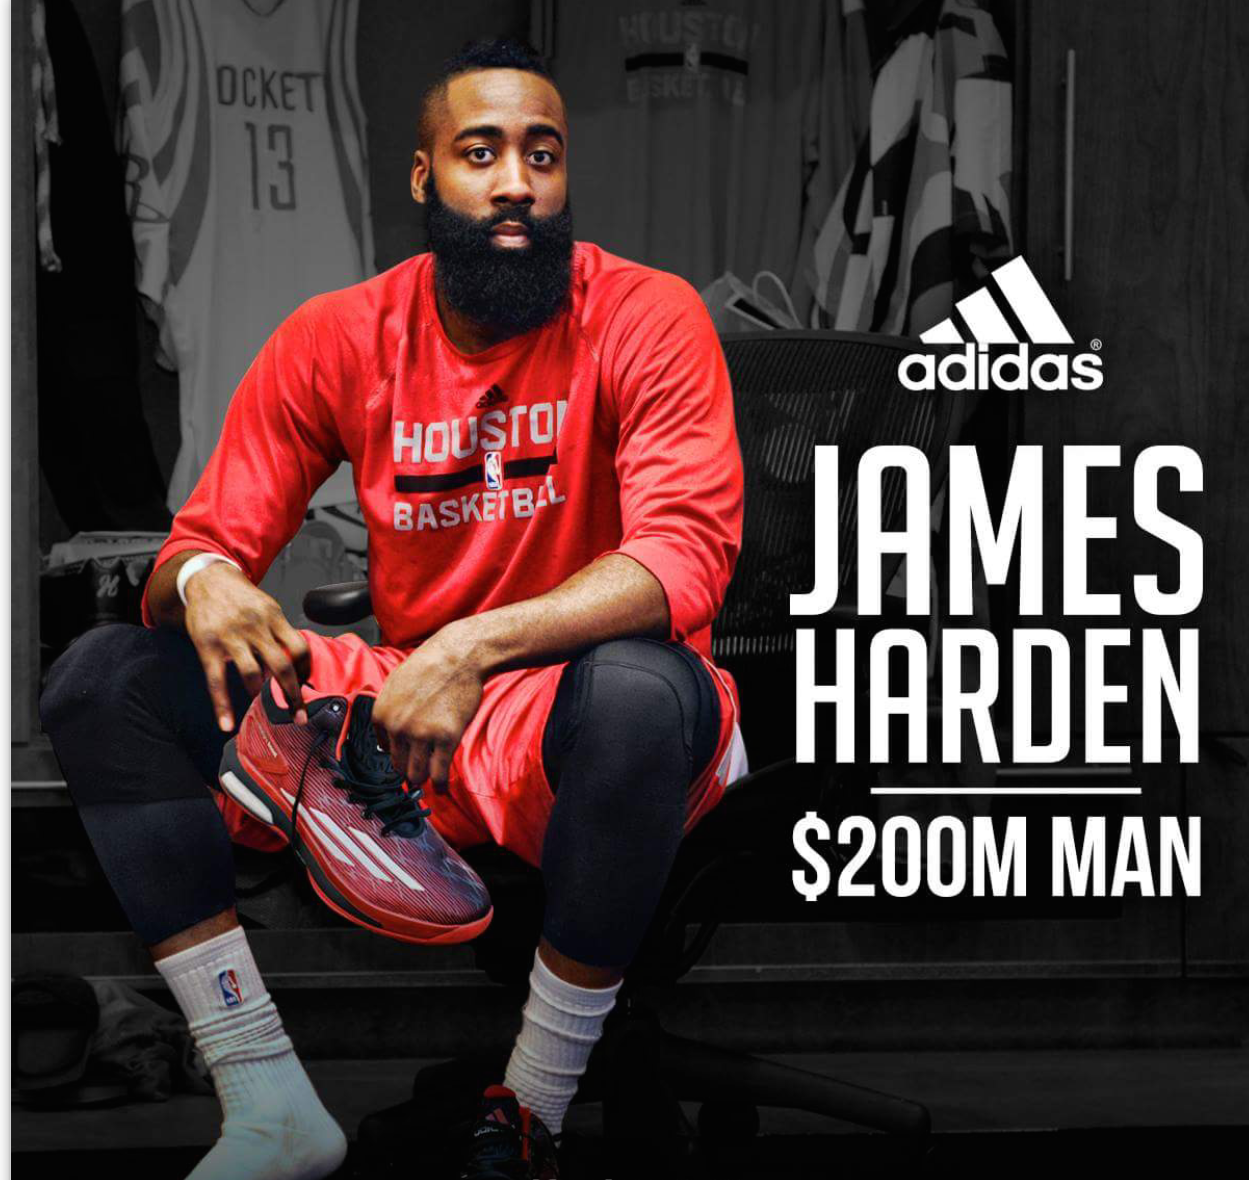 El Clutch Deportivo: James Harden la Nike por un contrato de $200 millones por 13 años